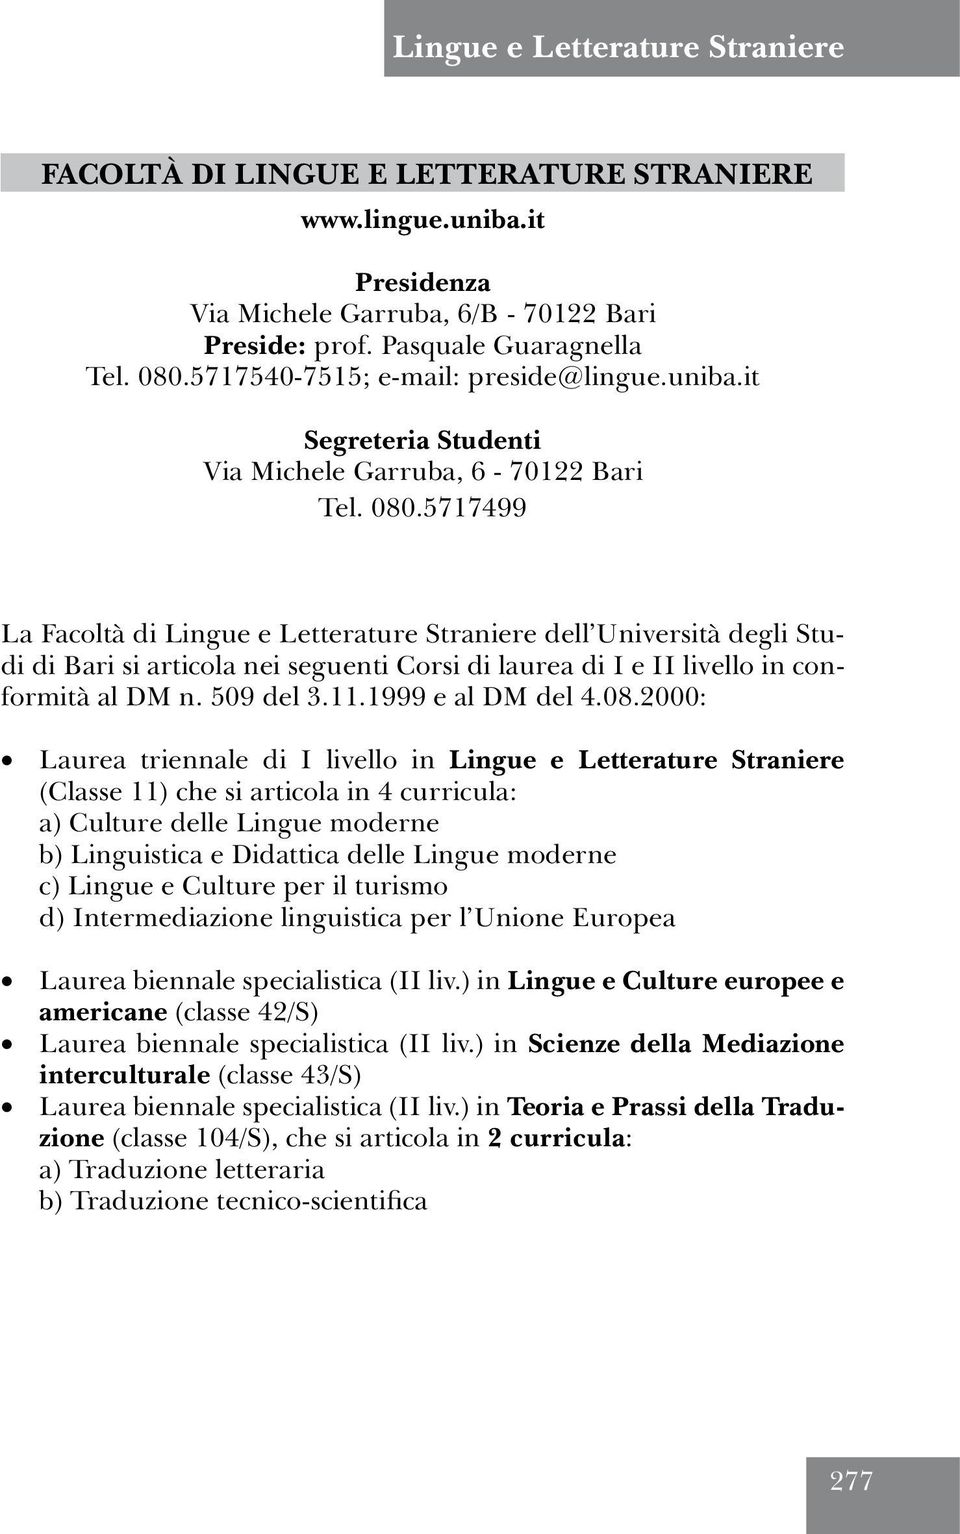 5717499 La Facoltà di Lingue e Letterature Straniere dell Università degli Studi di Bari si articola nei seguenti Corsi di laurea di I e II livello in conformità al DM n. 509 del 3.11.